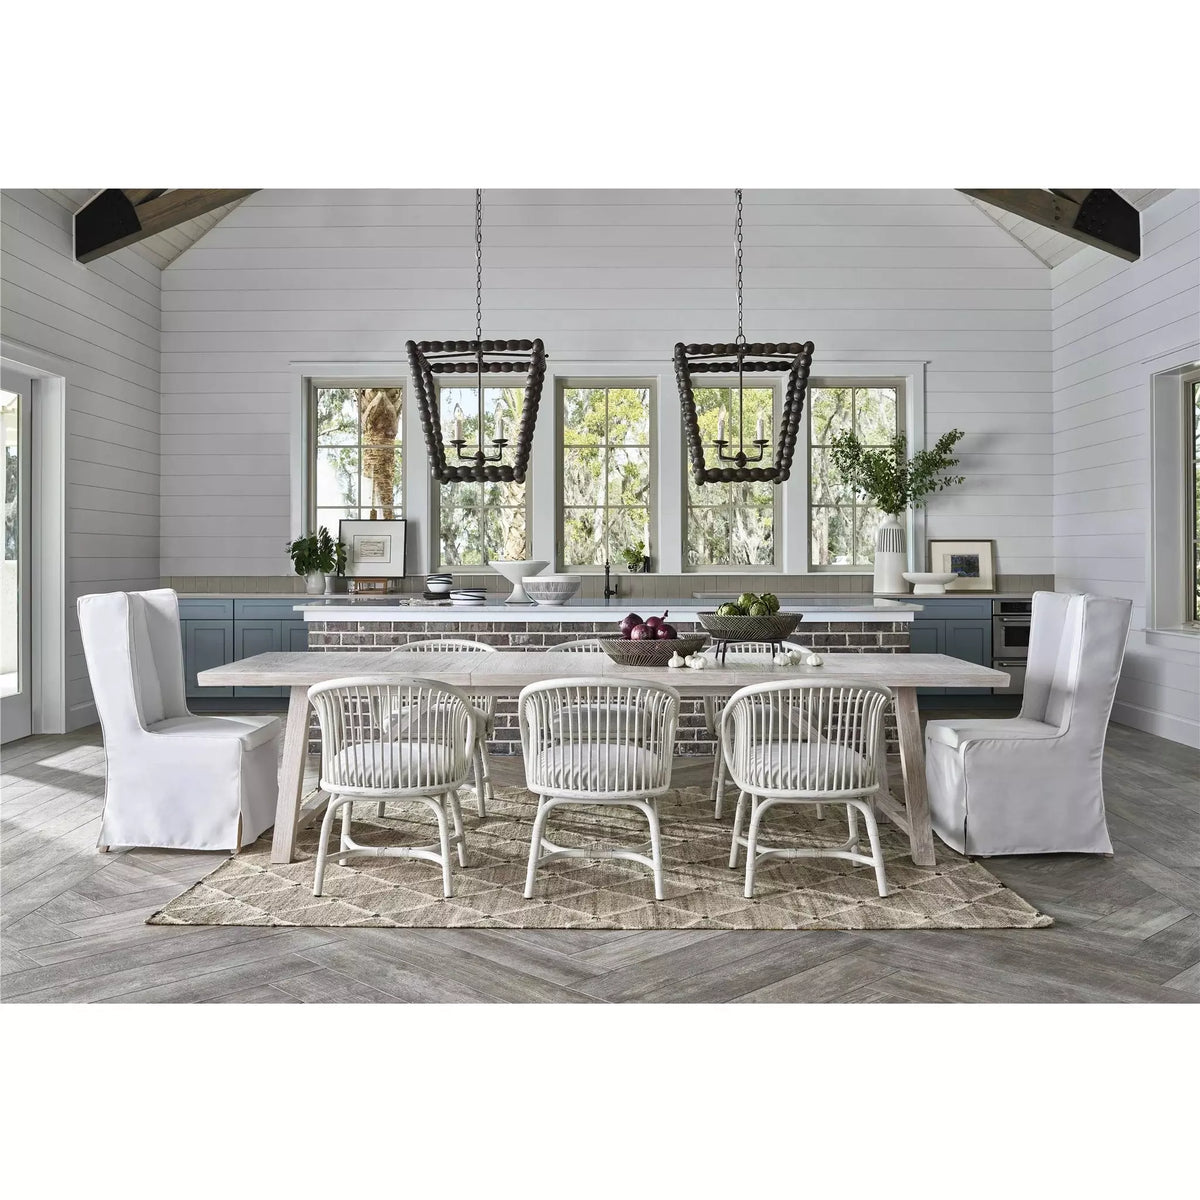 Aruba Rattan Chair - Be Bold Furniture